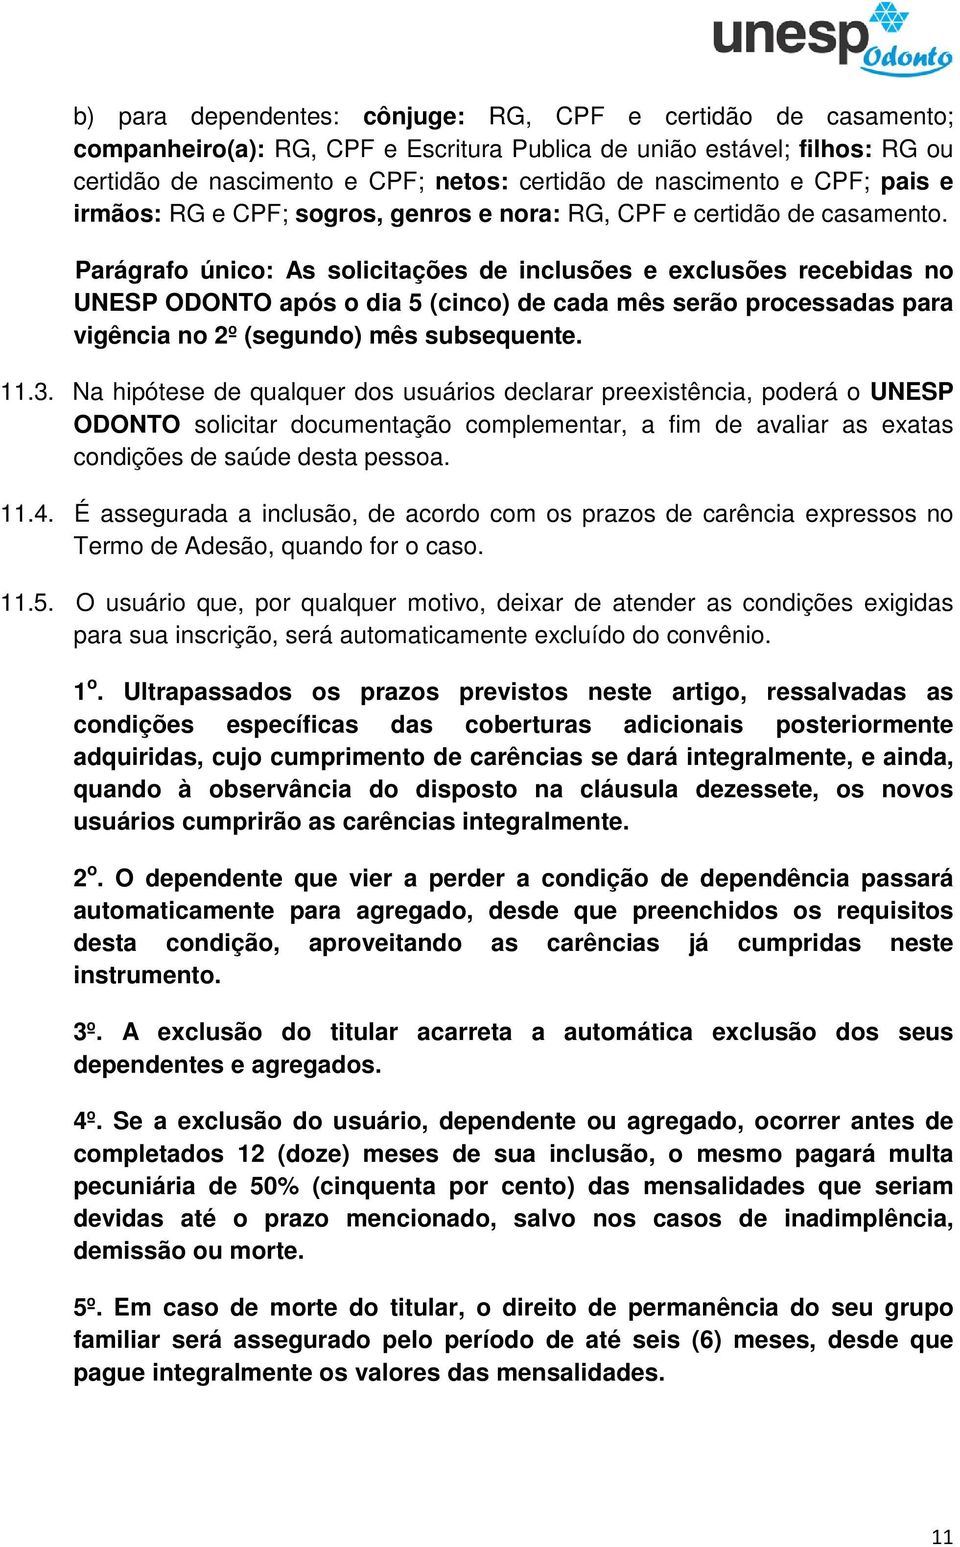 Parágrafo único: As solicitações de inclusões e exclusões recebidas no UNESP ODONTO após o dia 5 (cinco) de cada mês serão processadas para vigência no 2º (segundo) mês subsequente. 11.3.